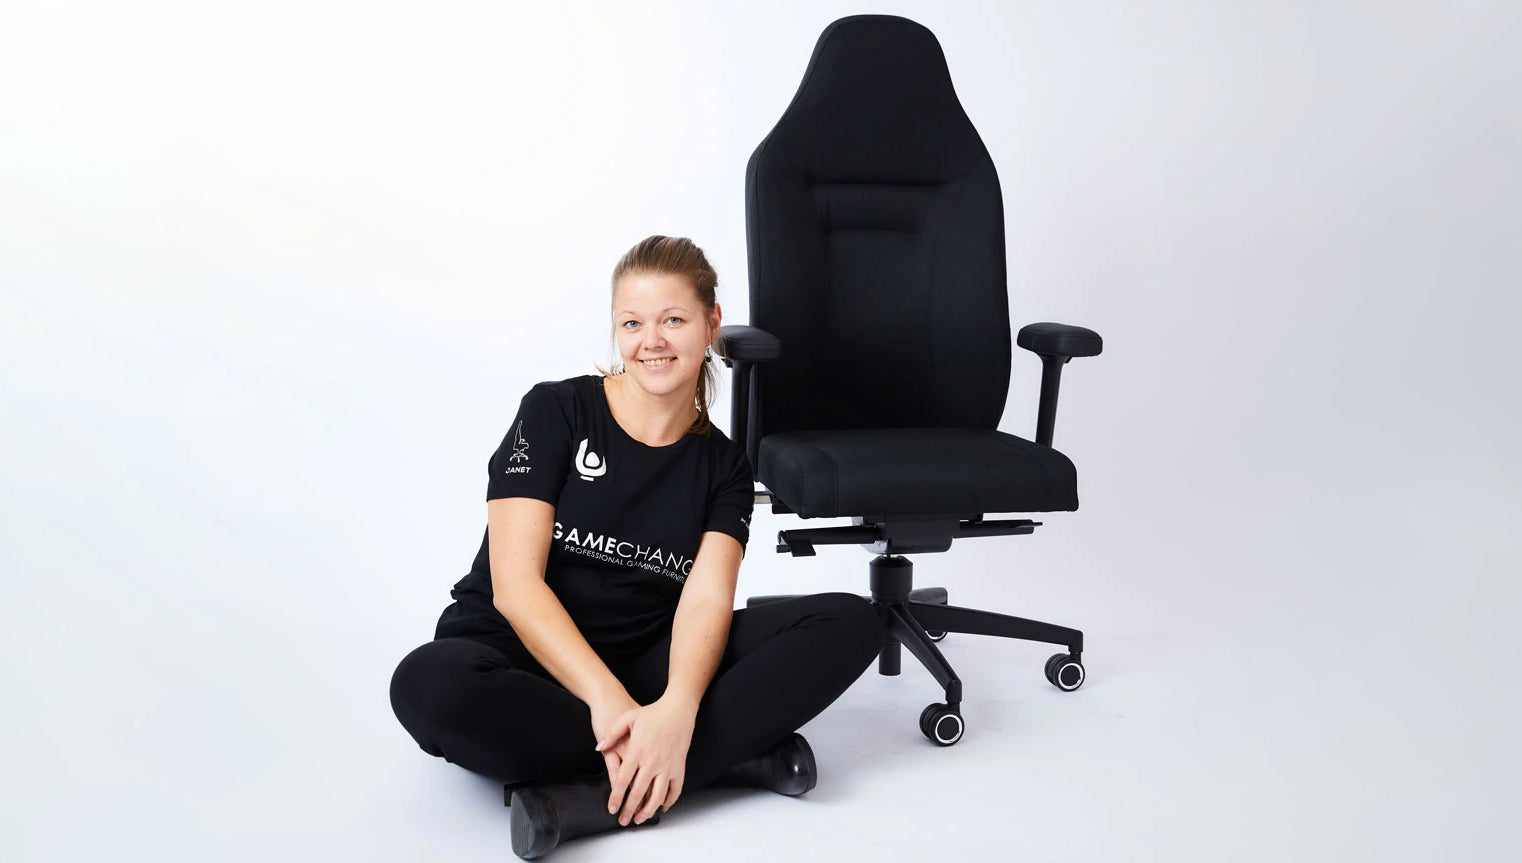 Janet Carstensens ist Gründerin der Firma Gamechanger und eine unserer Female Founders auf Shopify.